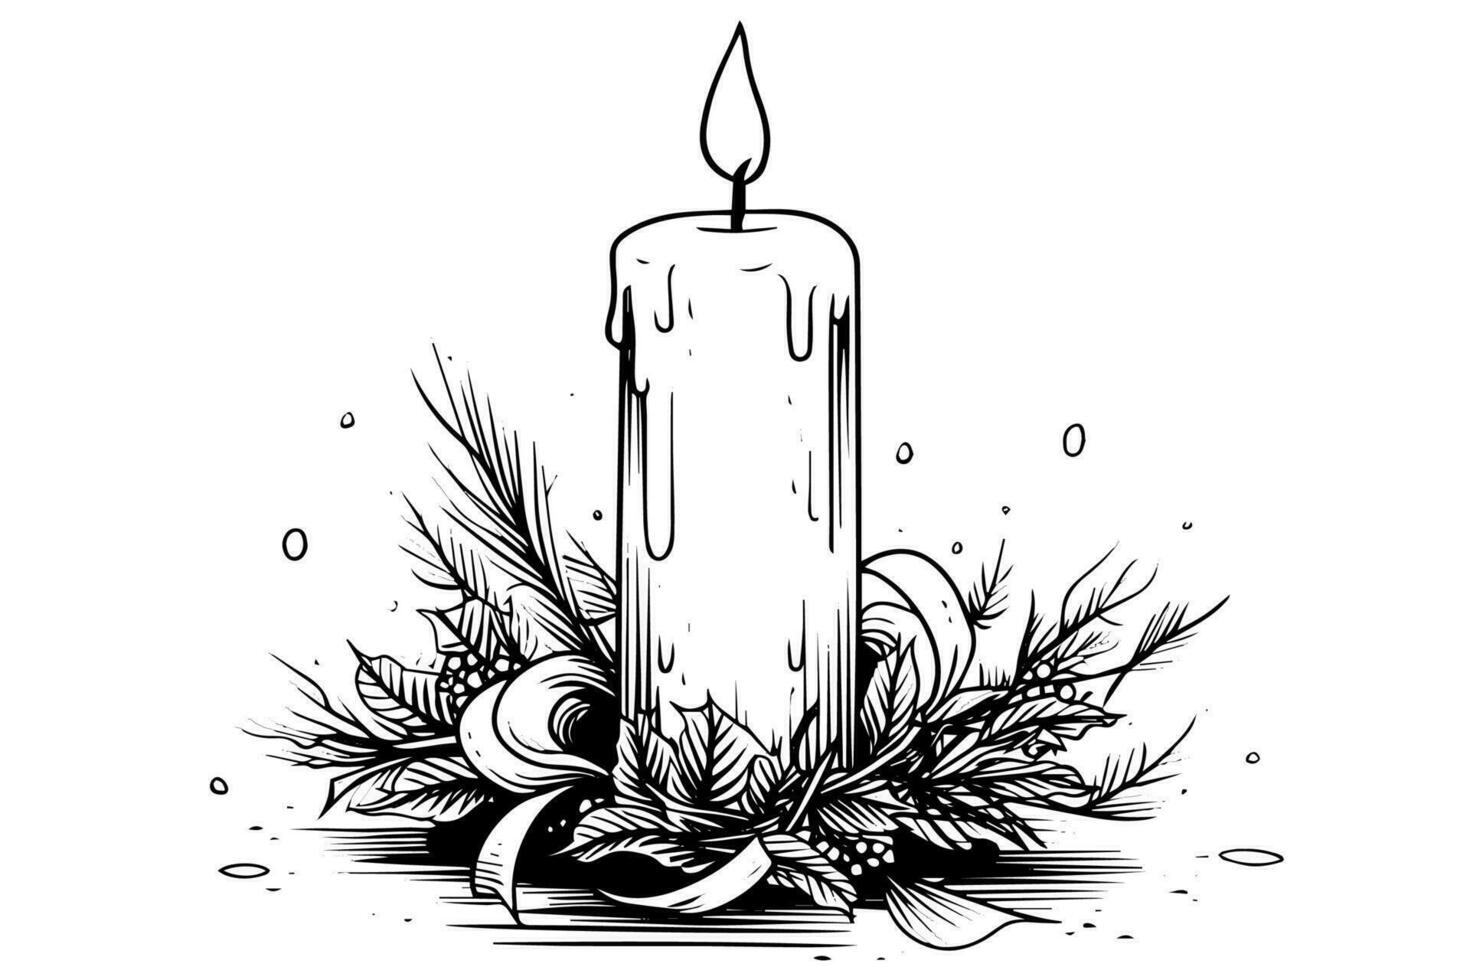 Grosso Natal velas queimando. mão desenhado esboço gravação estilo vetor ilustração.